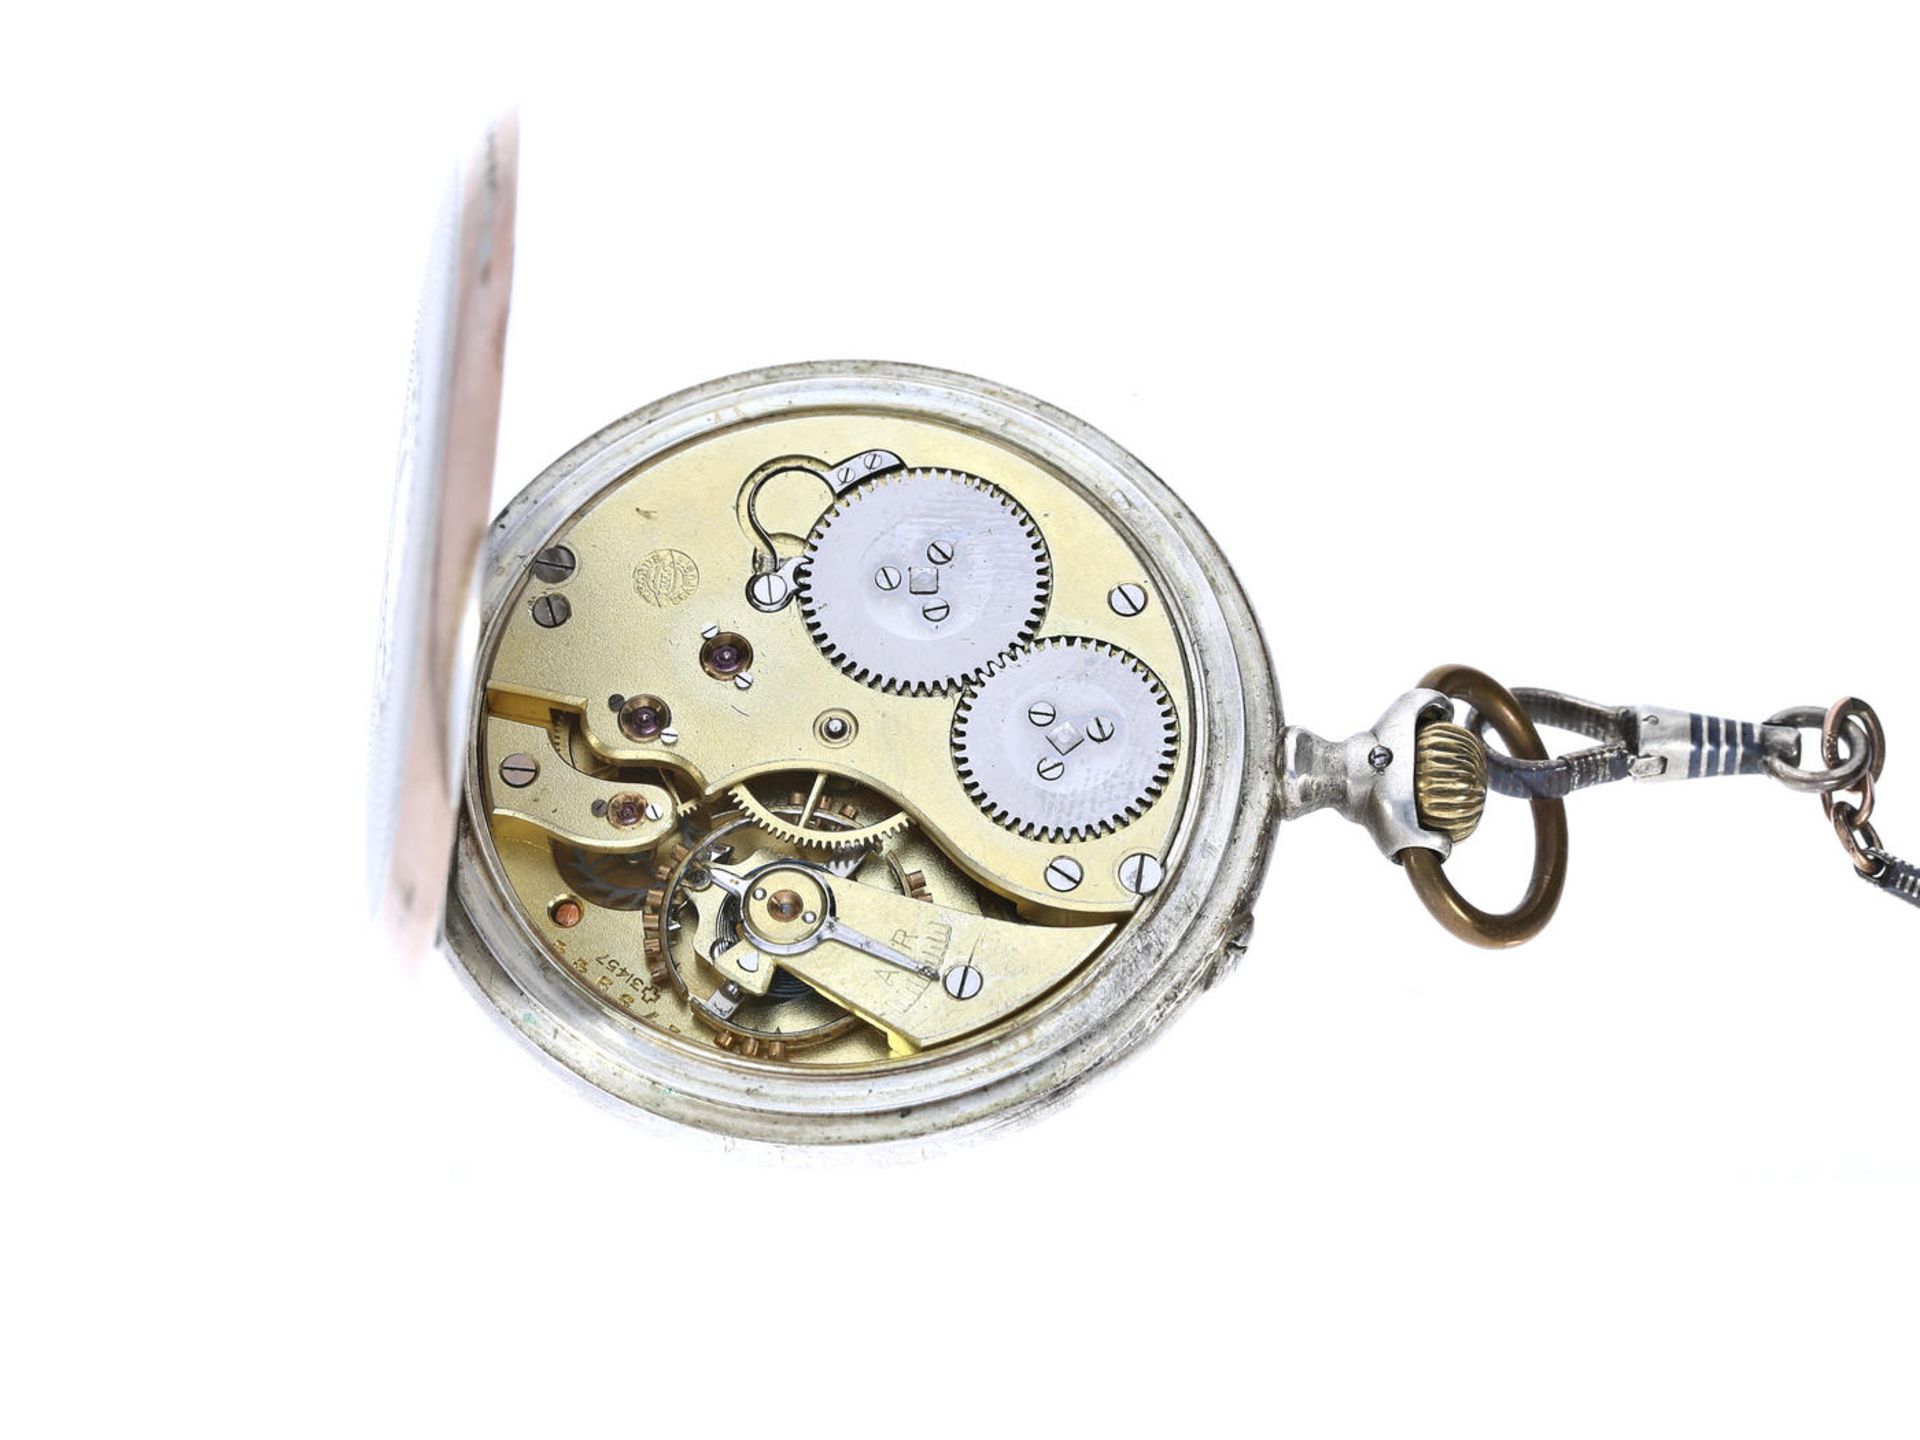 Taschenuhr: feine Herrentaschenuhr von IWC Schaffhausen mit attraktiver Uhrenkette, ca. 1910 Ca. - Bild 3 aus 5